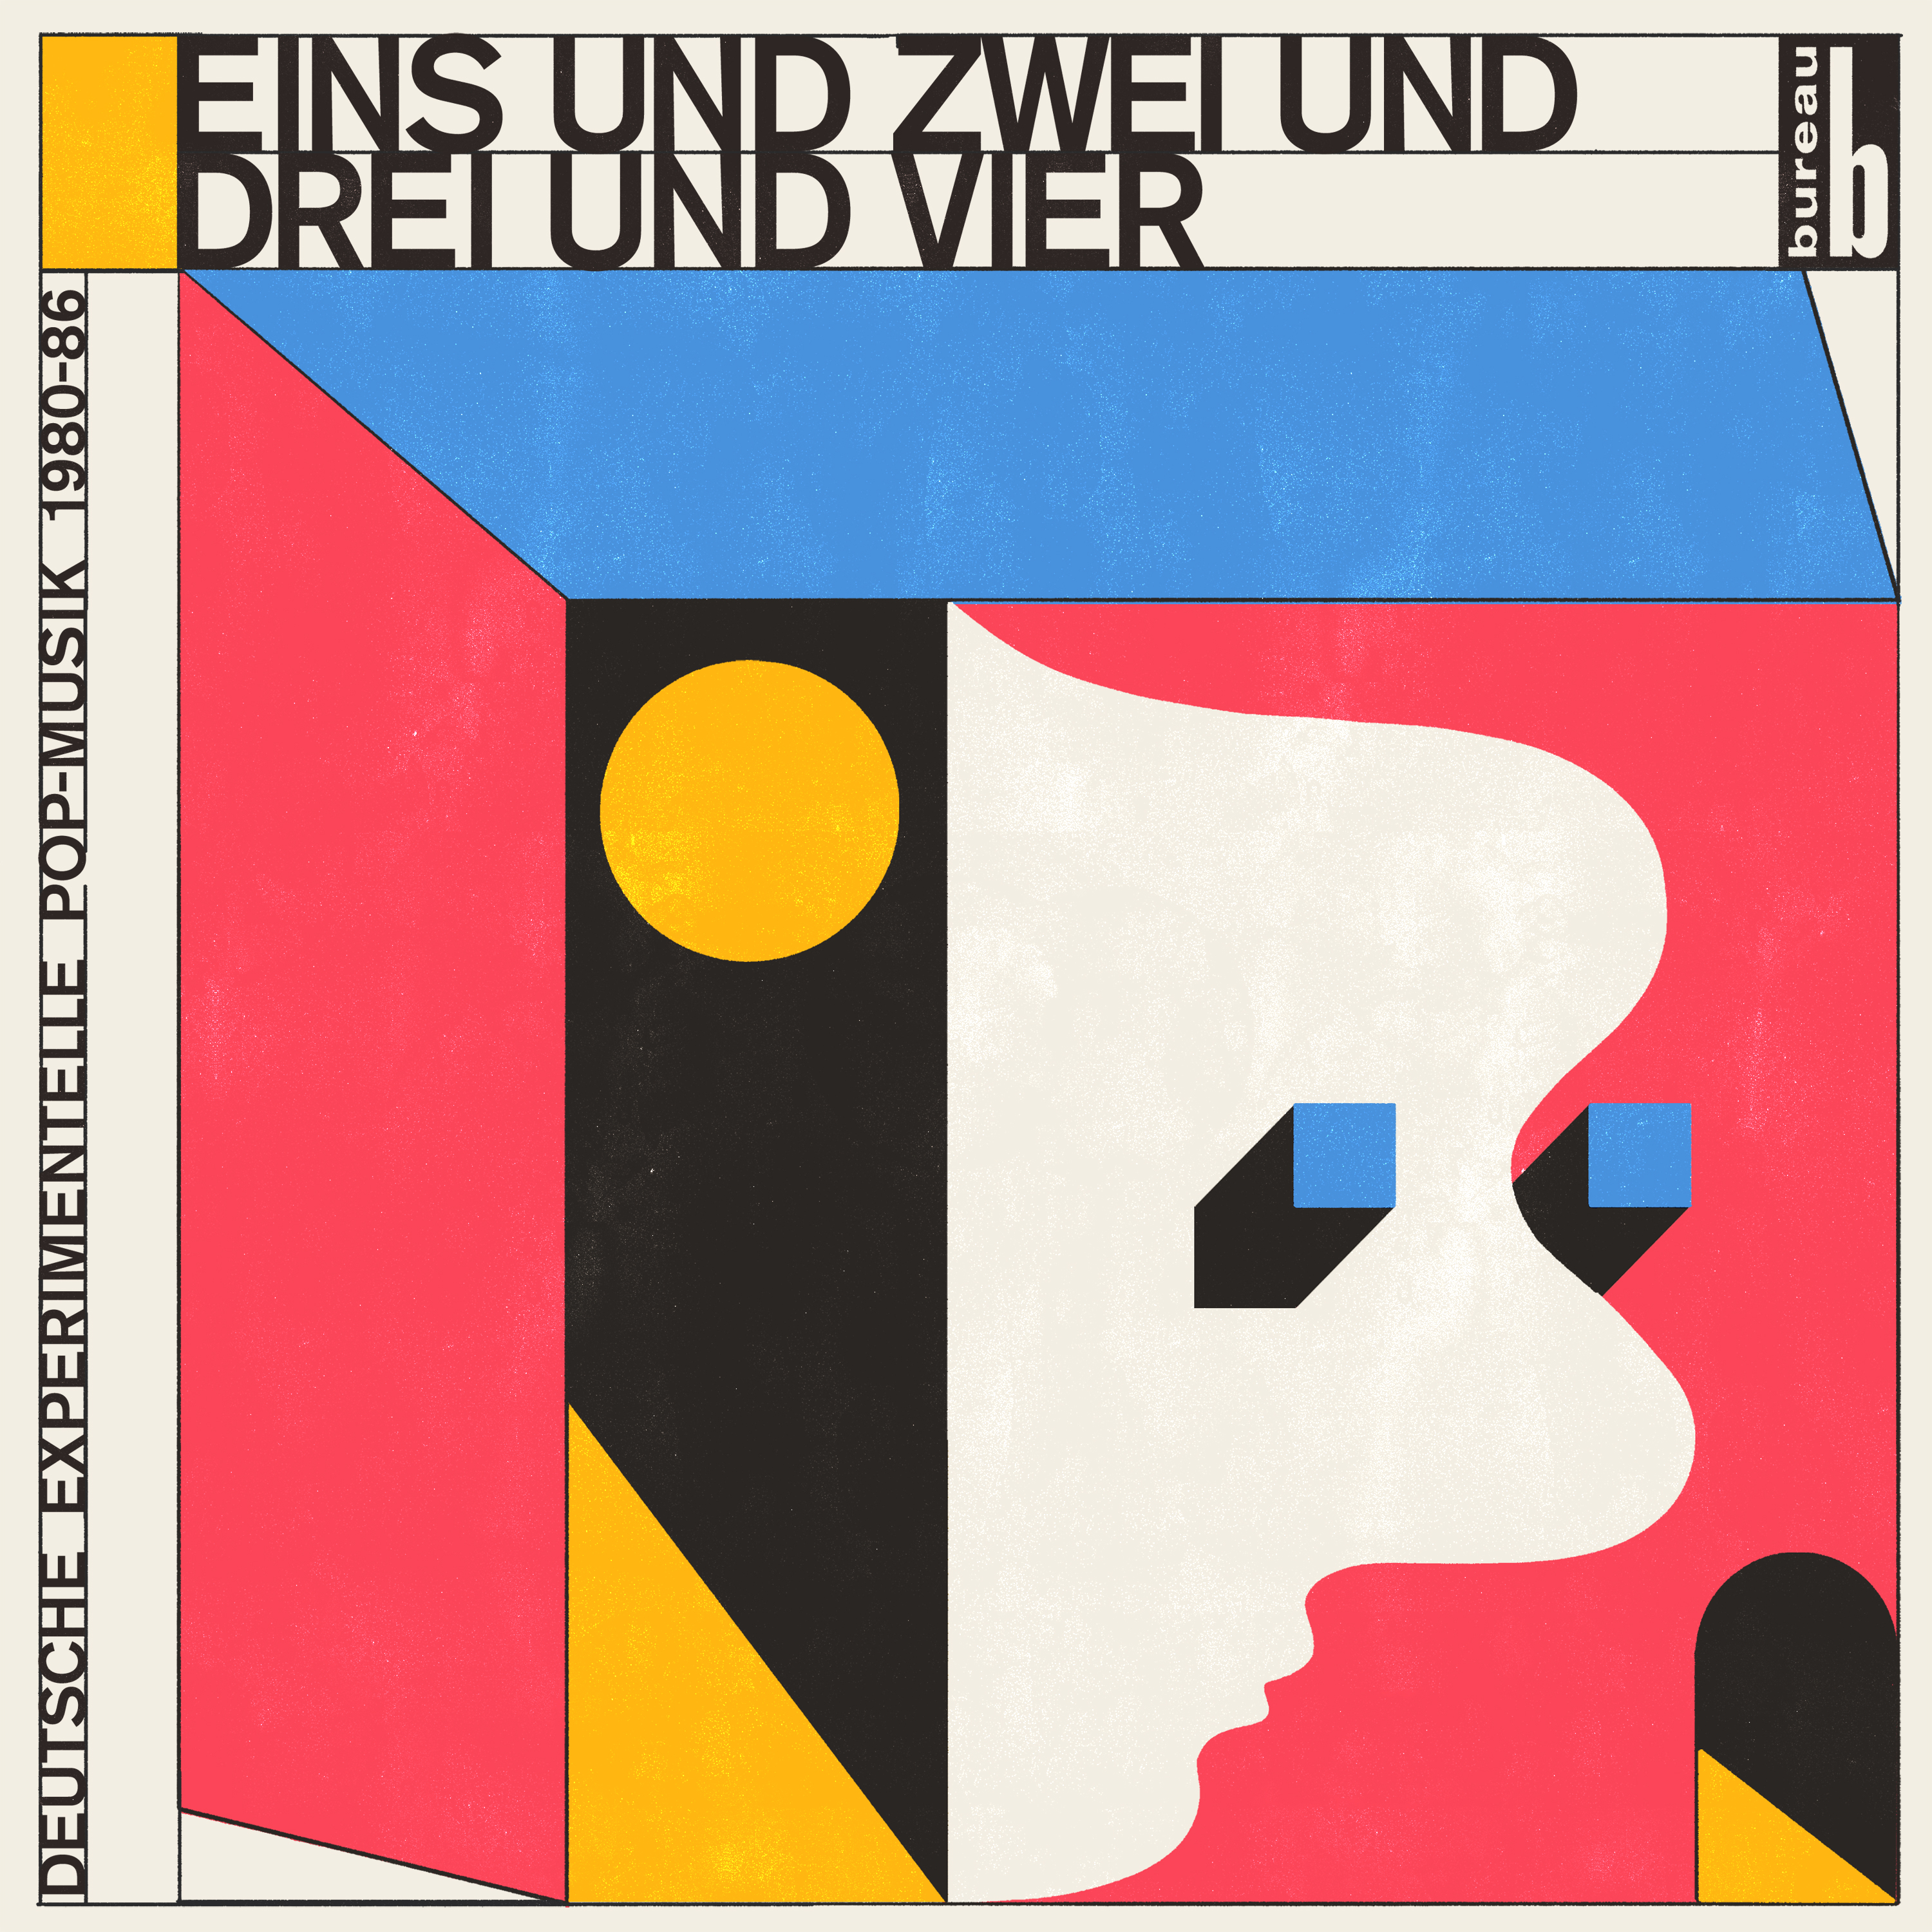 Eins und Zwei und Drei und Vier - Deutsche Experimentelle Pop-Musik 1980-86